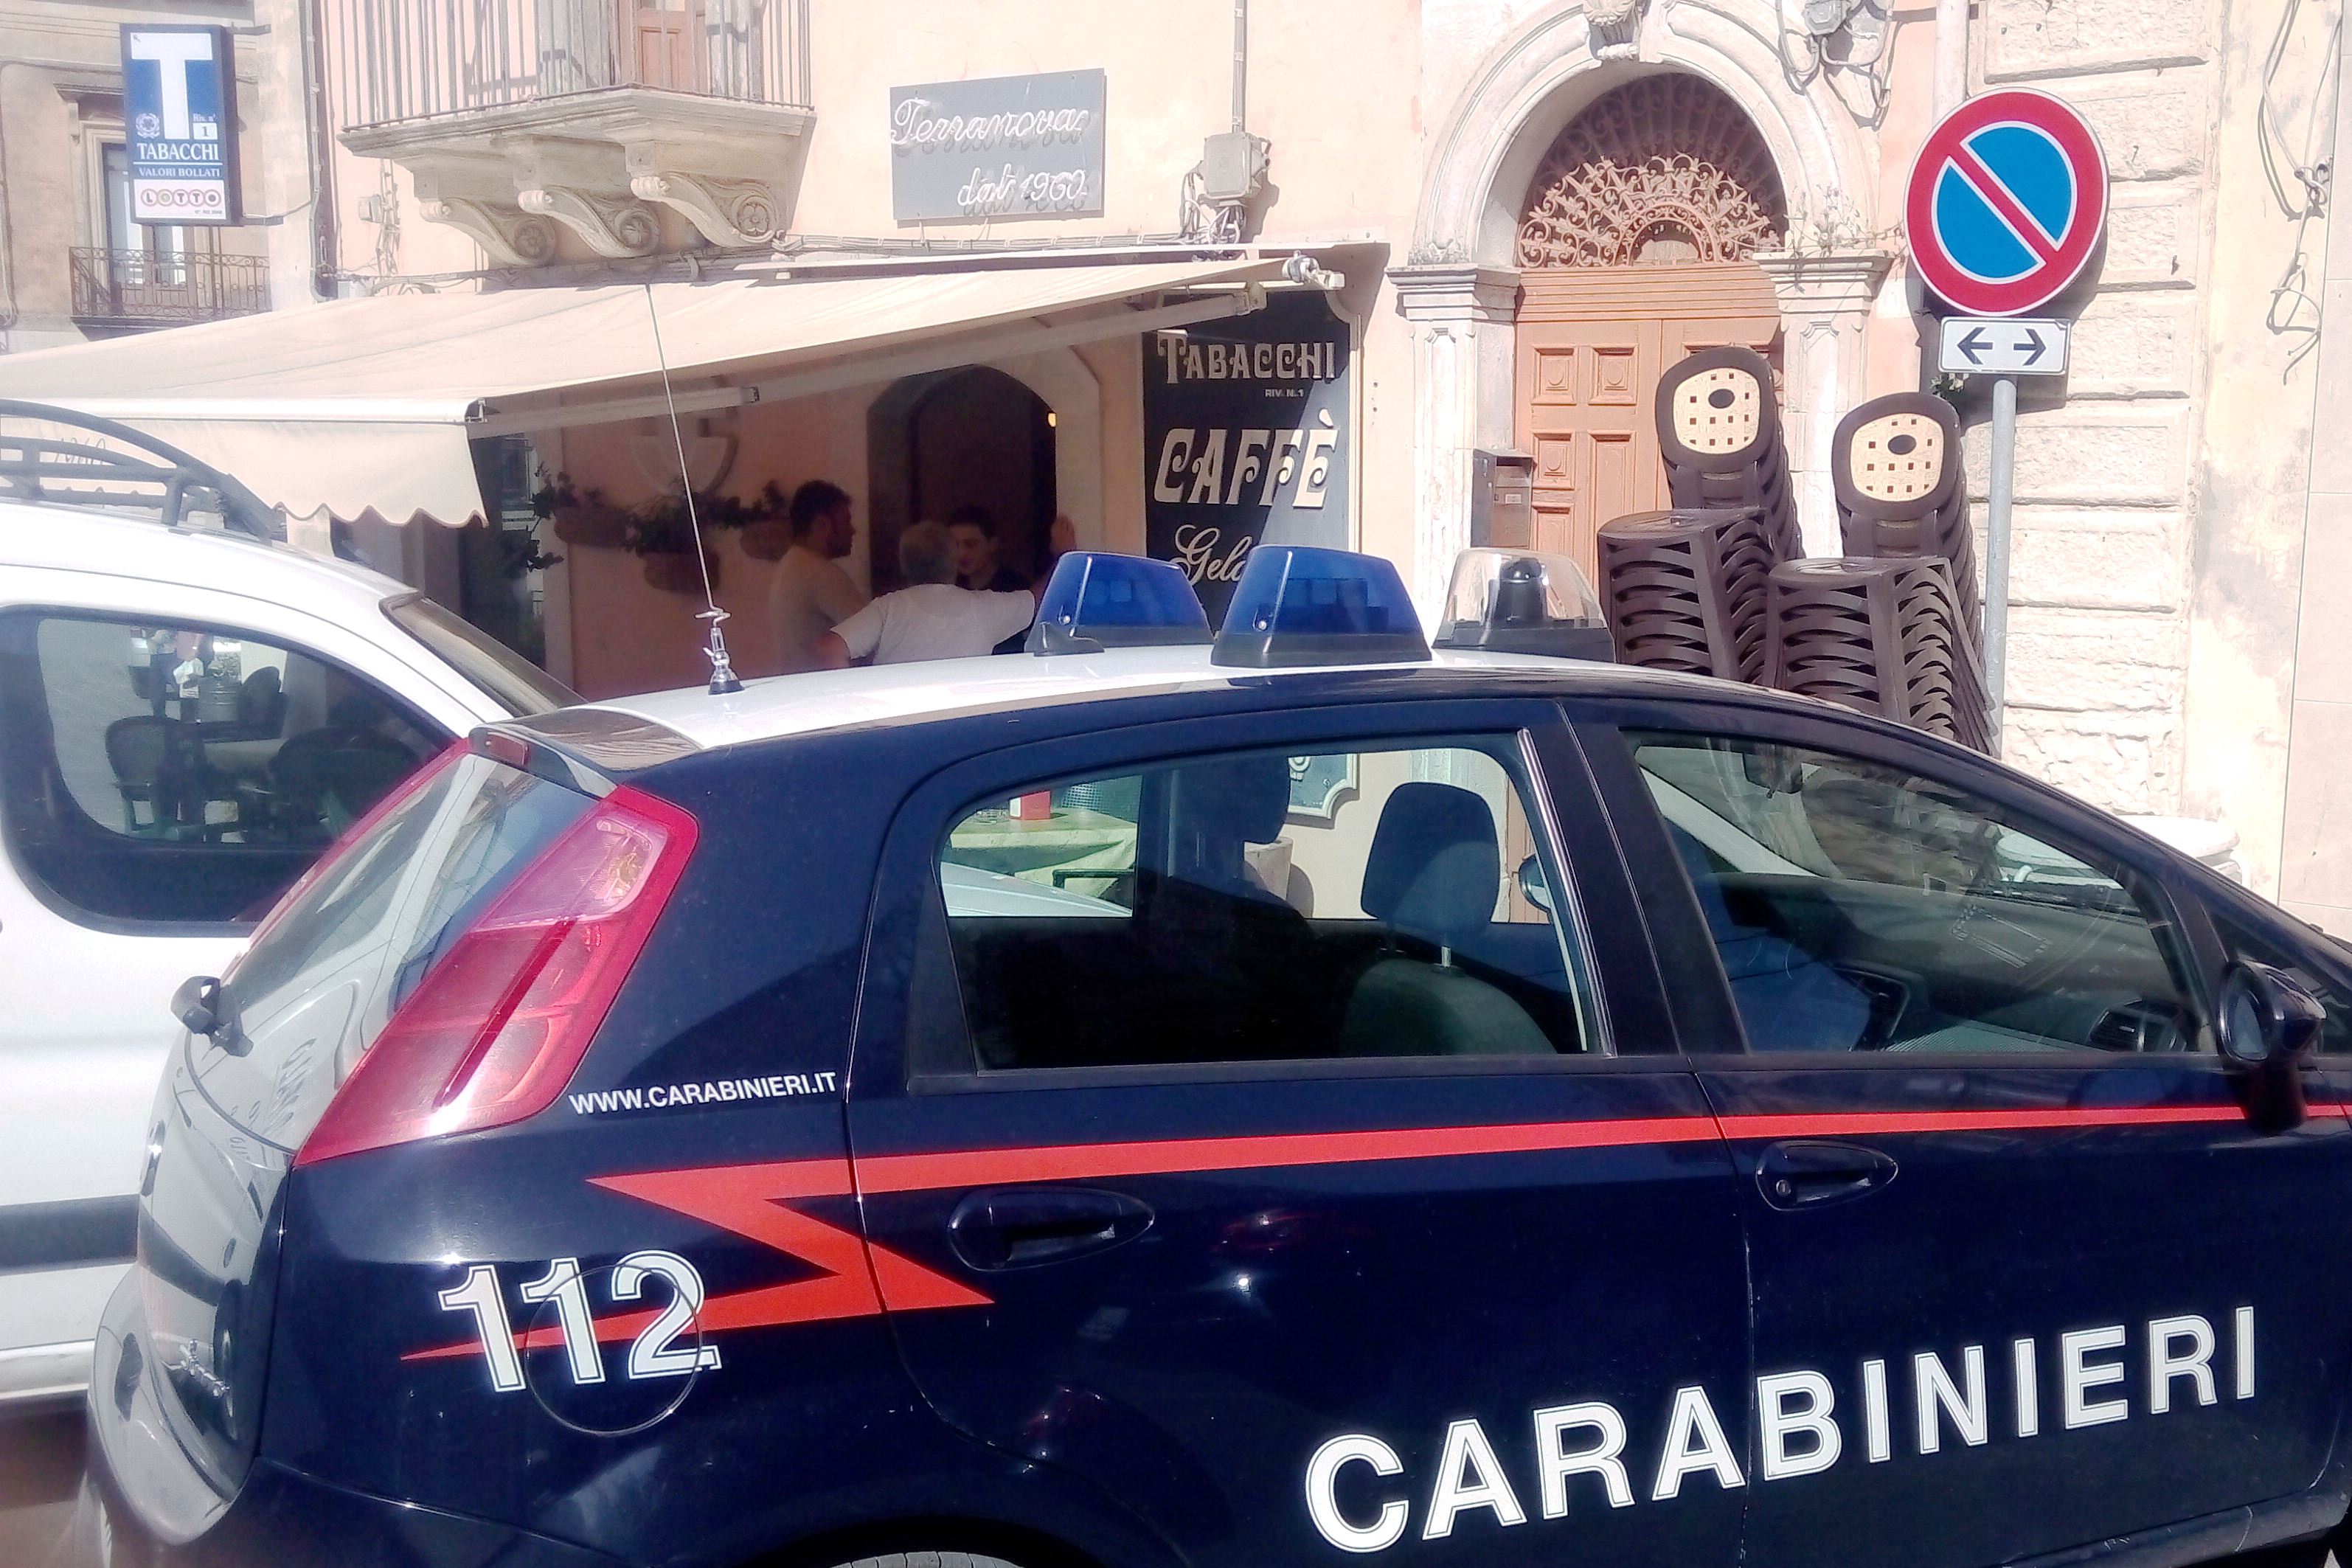  Monterosso Almo – Carabinieri intervengono presso un bar, ladri messi in fuga dai monterossani